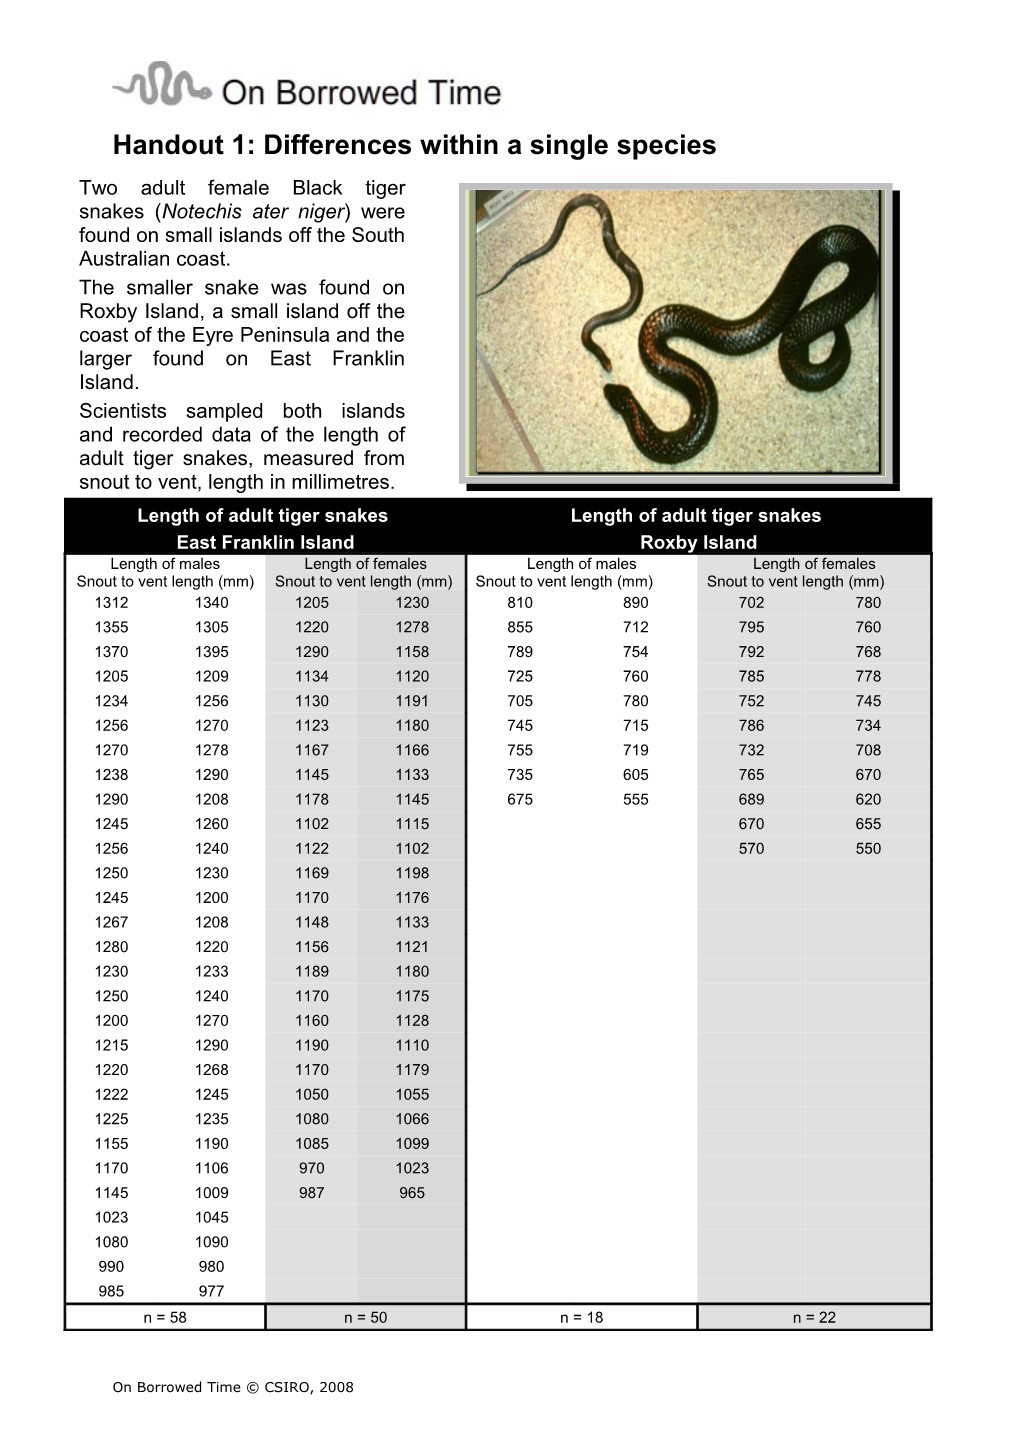 Handout 3B: Black Tiger Snake Population Simulation Cards